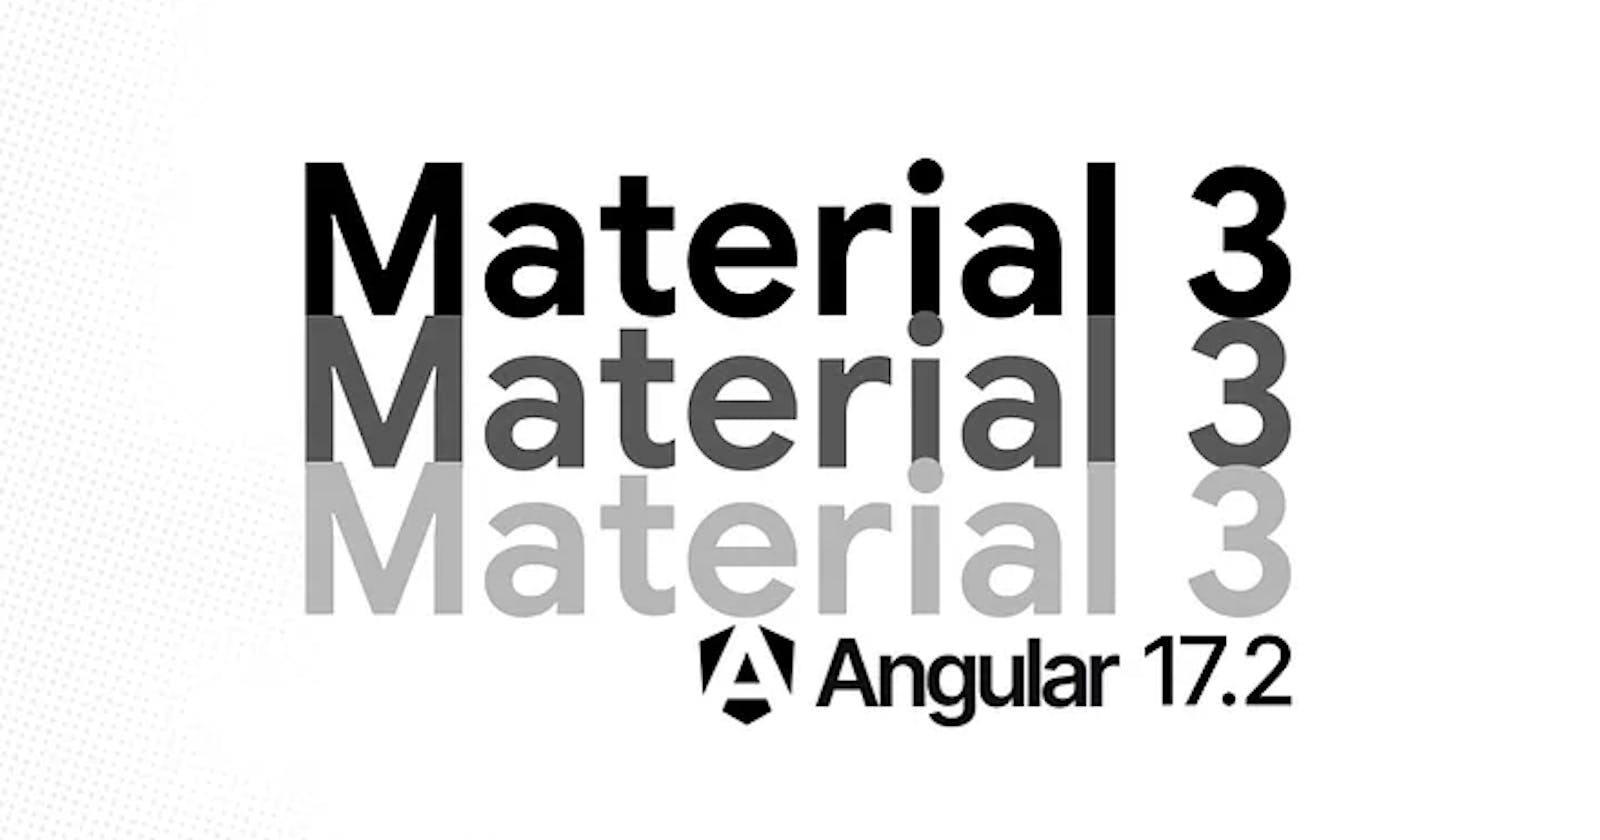 Material 3 in Angular 17.2